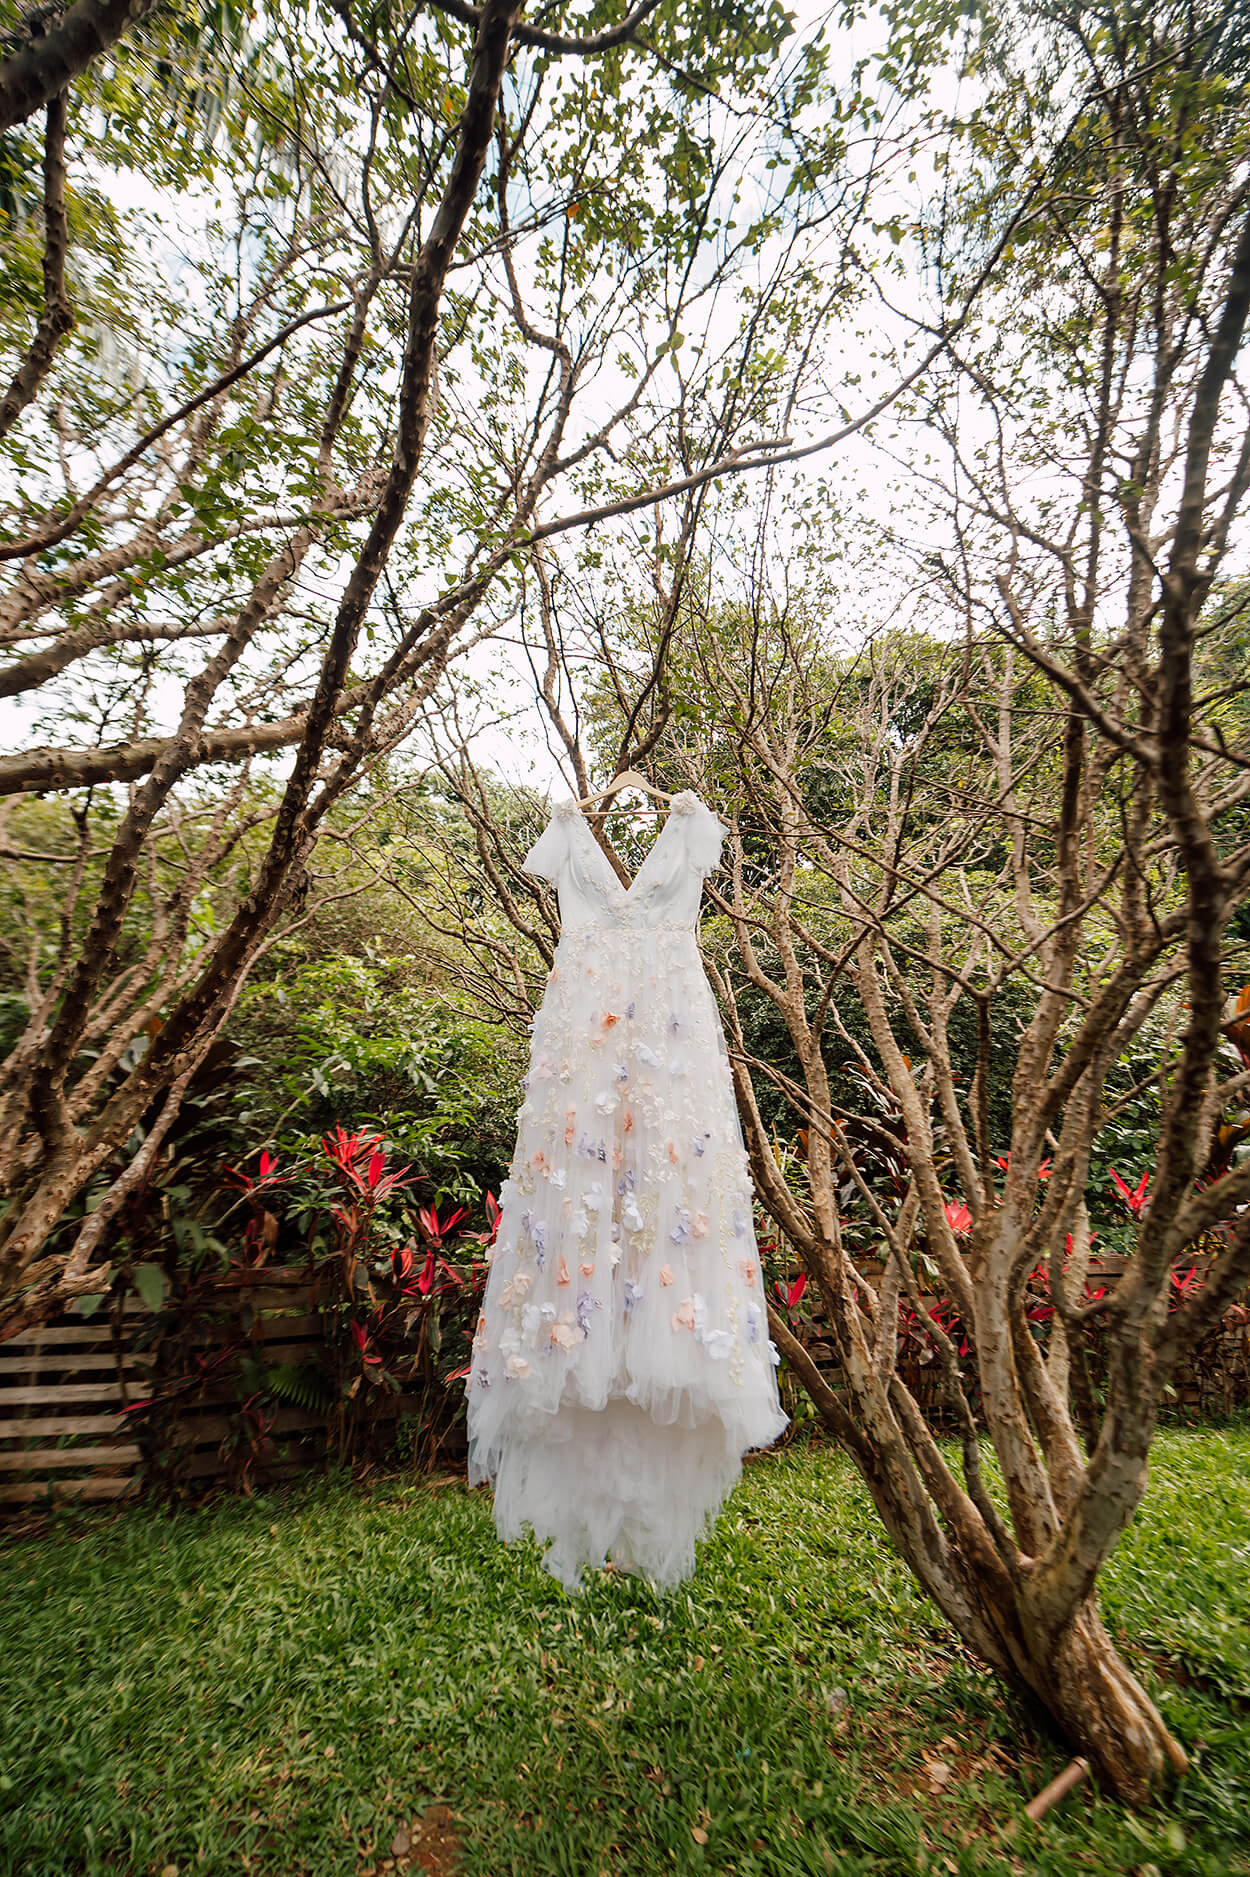 vestido de noiva com aplicação de flores coloridas pendurado em árvore no jardim